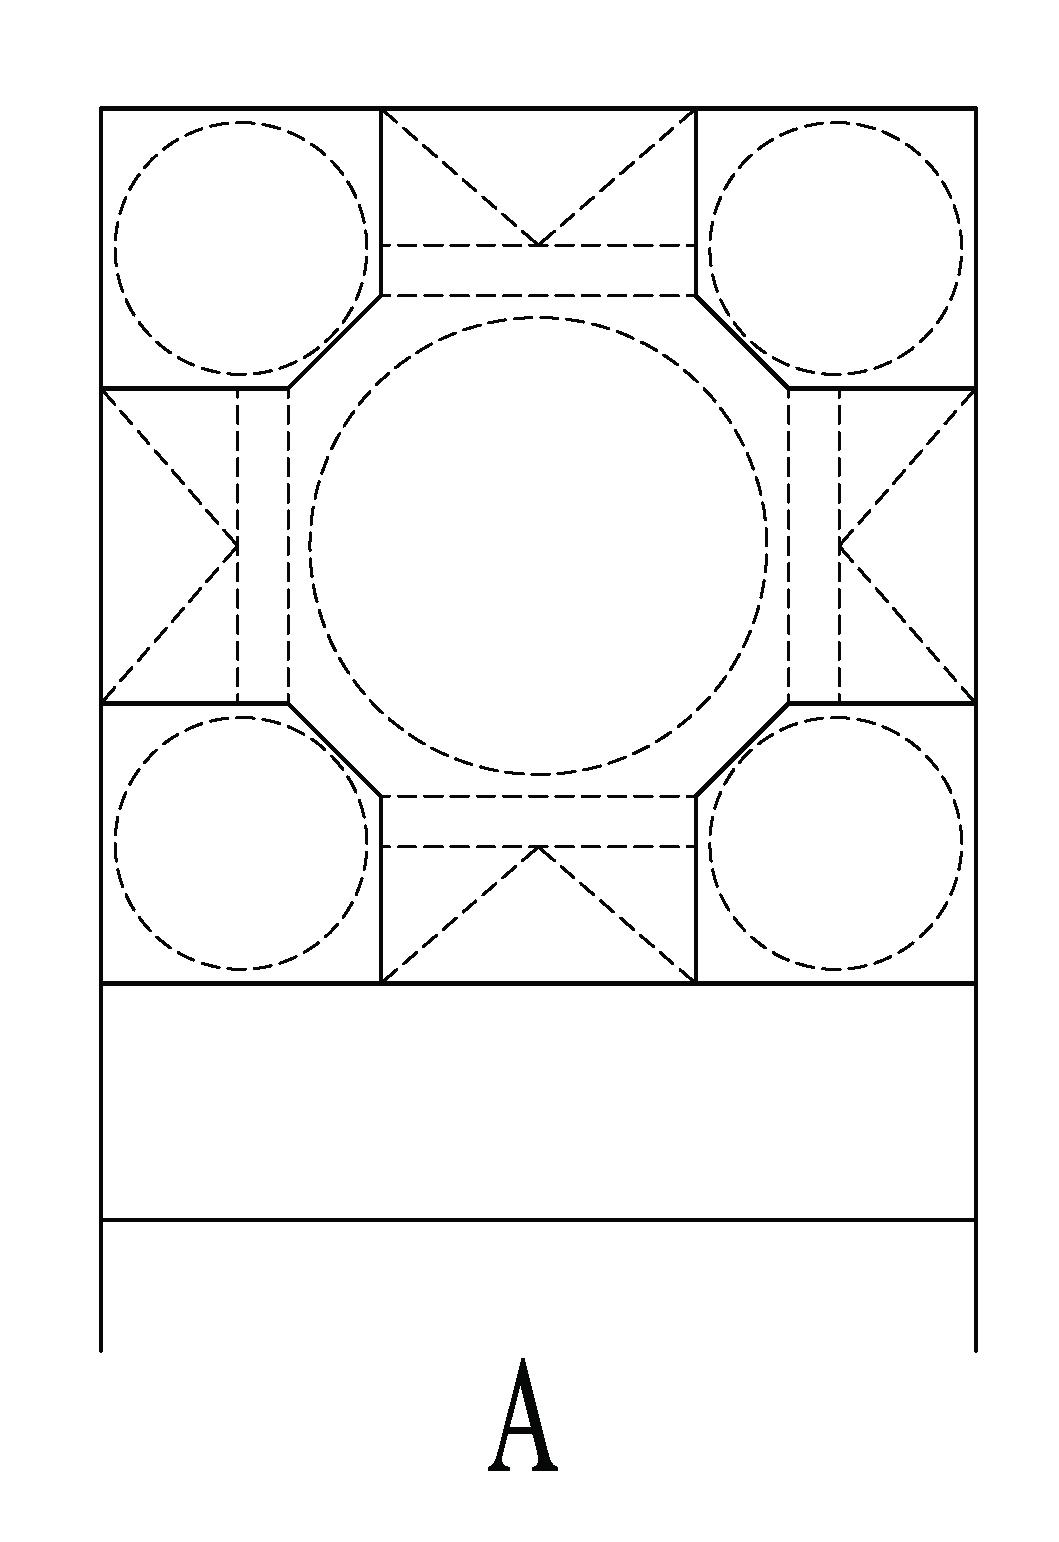 Schema 1-'A' type schematic planning